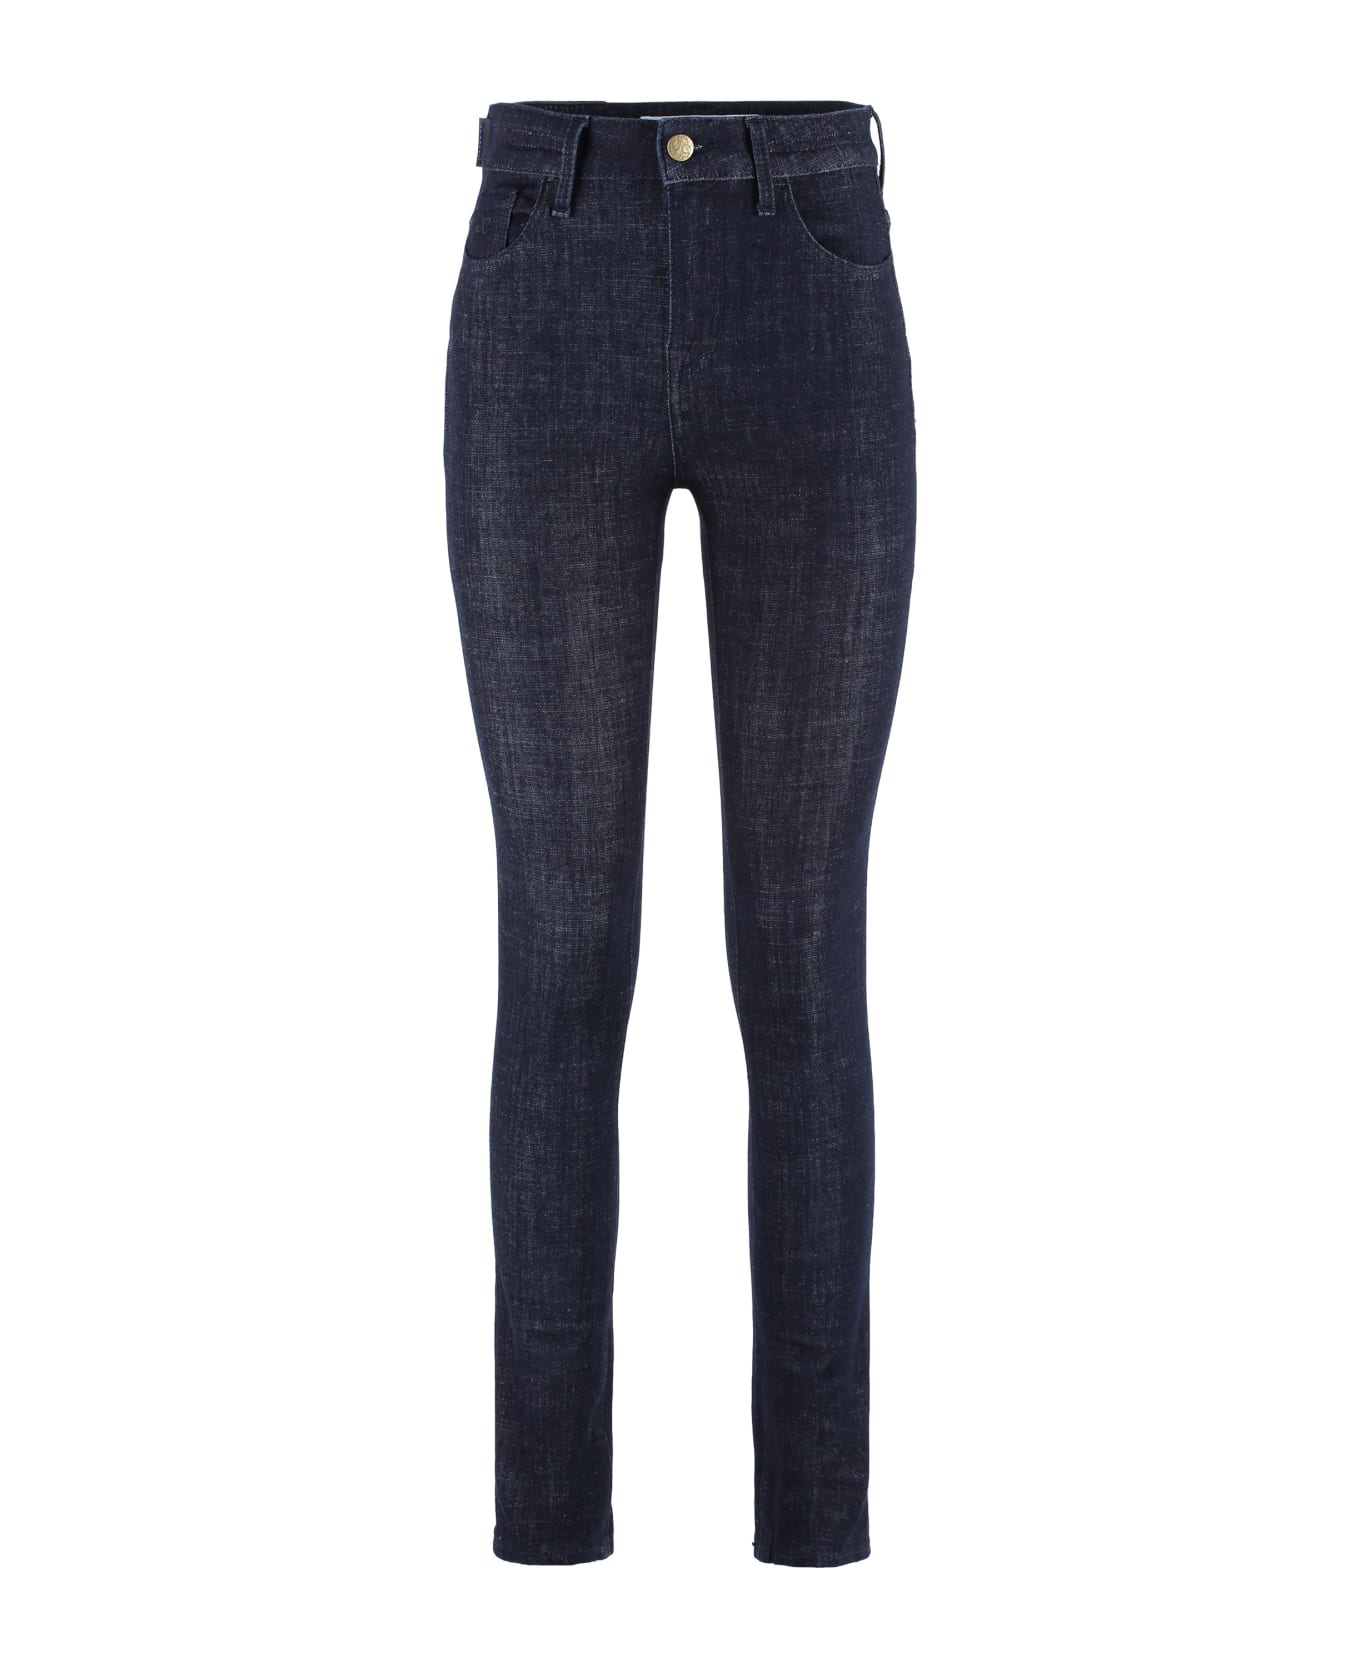 Jacob Cohen 5-pocket Jeans - Denim